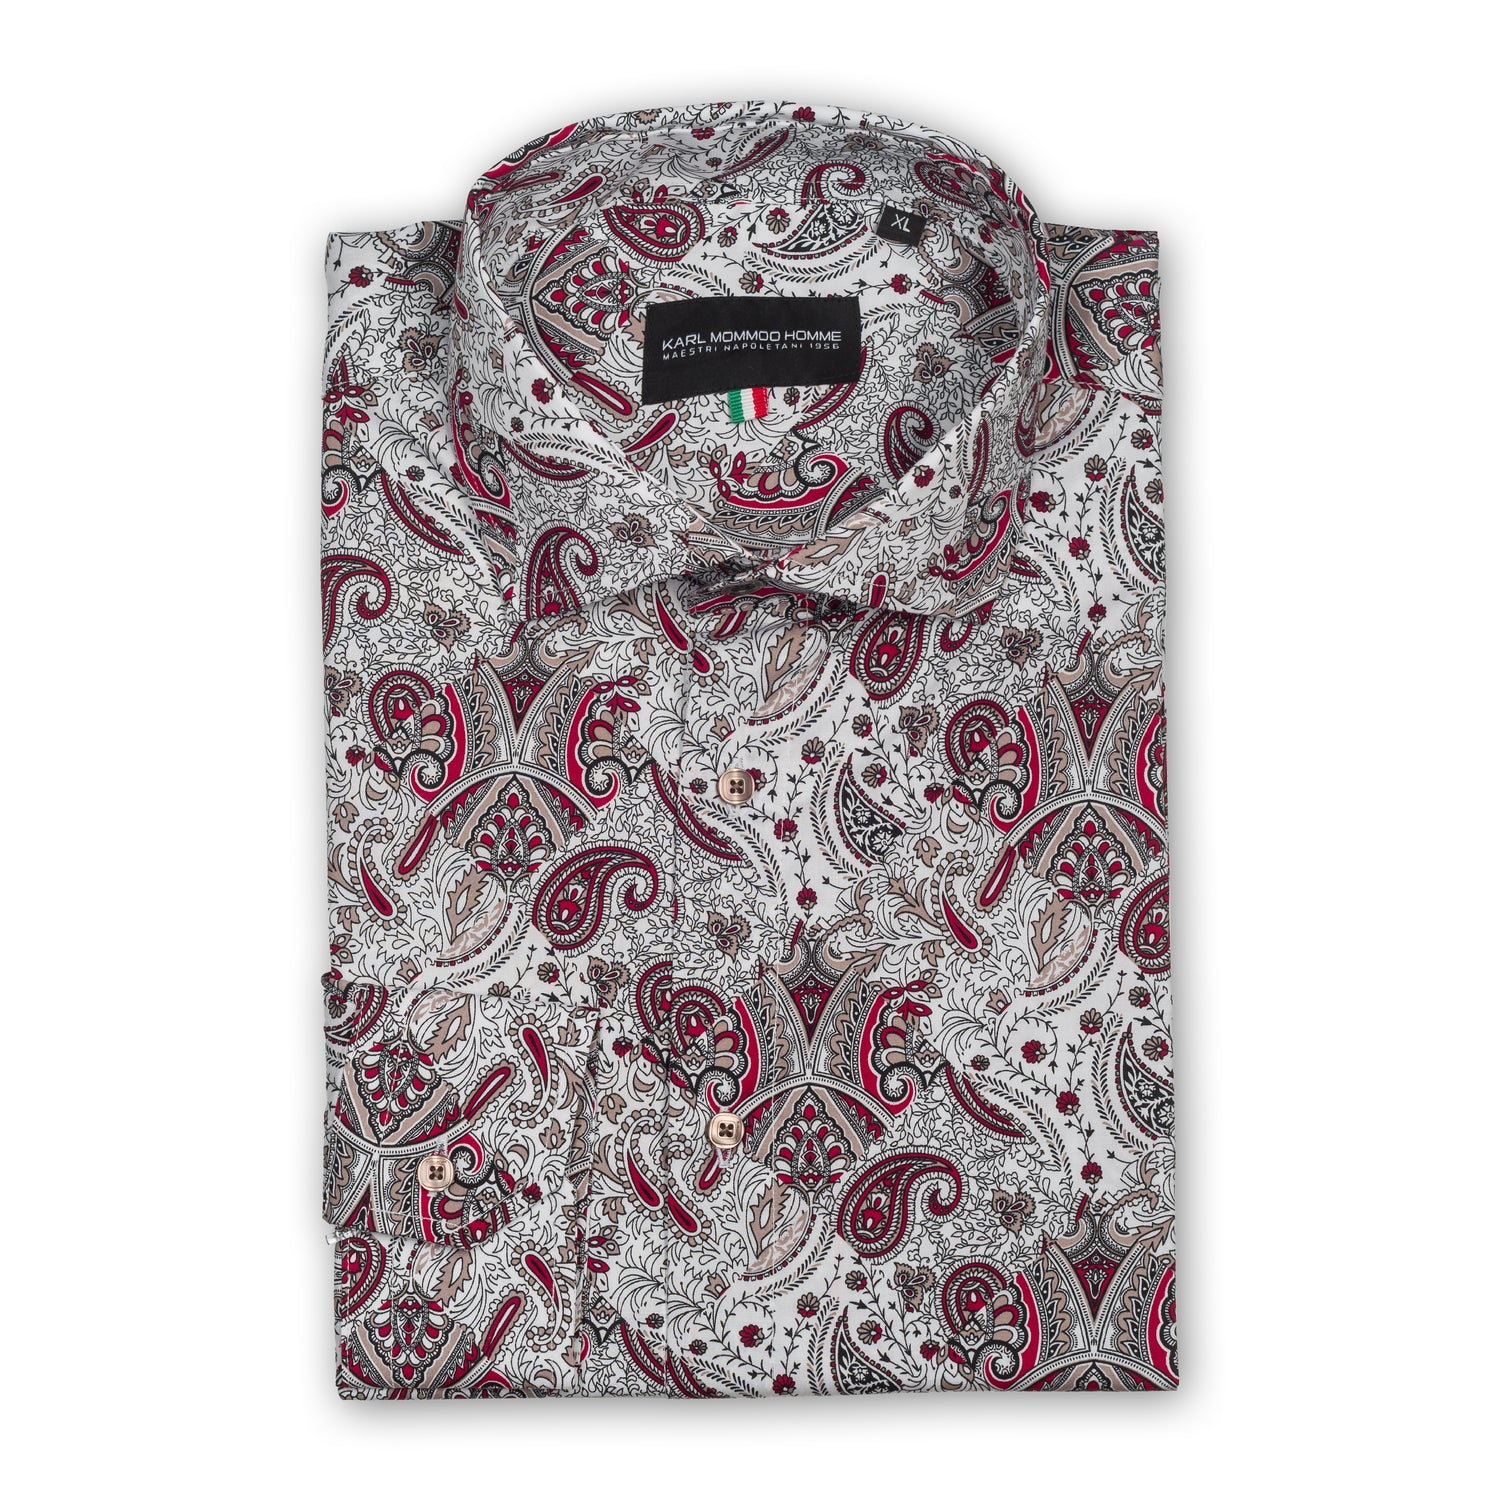 Karl Mommoo - Italienisches Herren-Hemd, Paisley Muster in weiß/rot/schwarz, Baumwolle mit Elasthan, Modern Fit. 